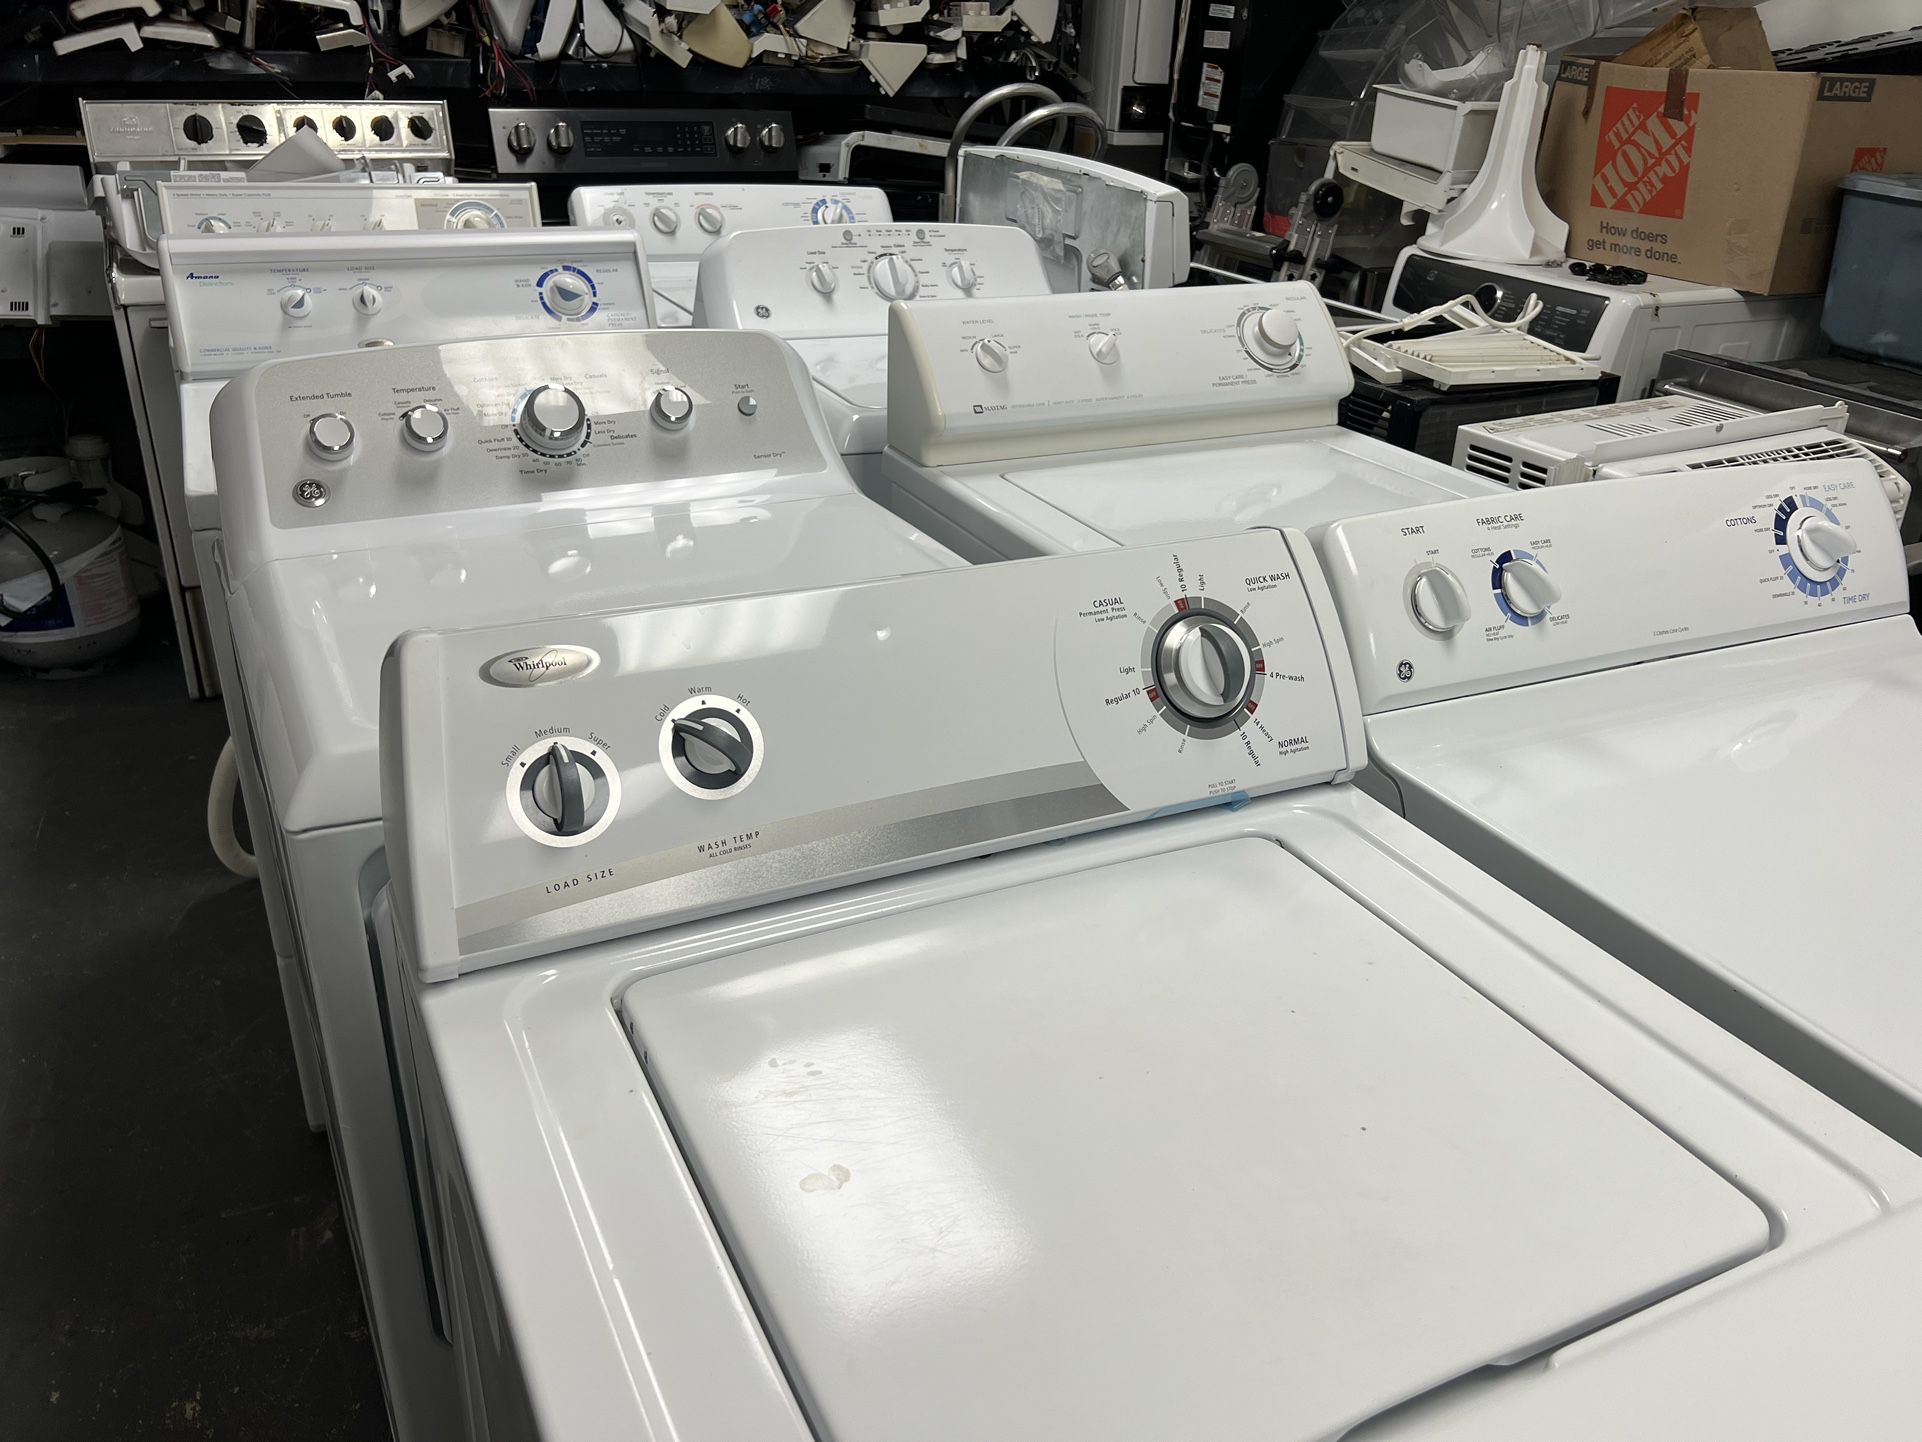 Washer Machine 27 “ Wides 